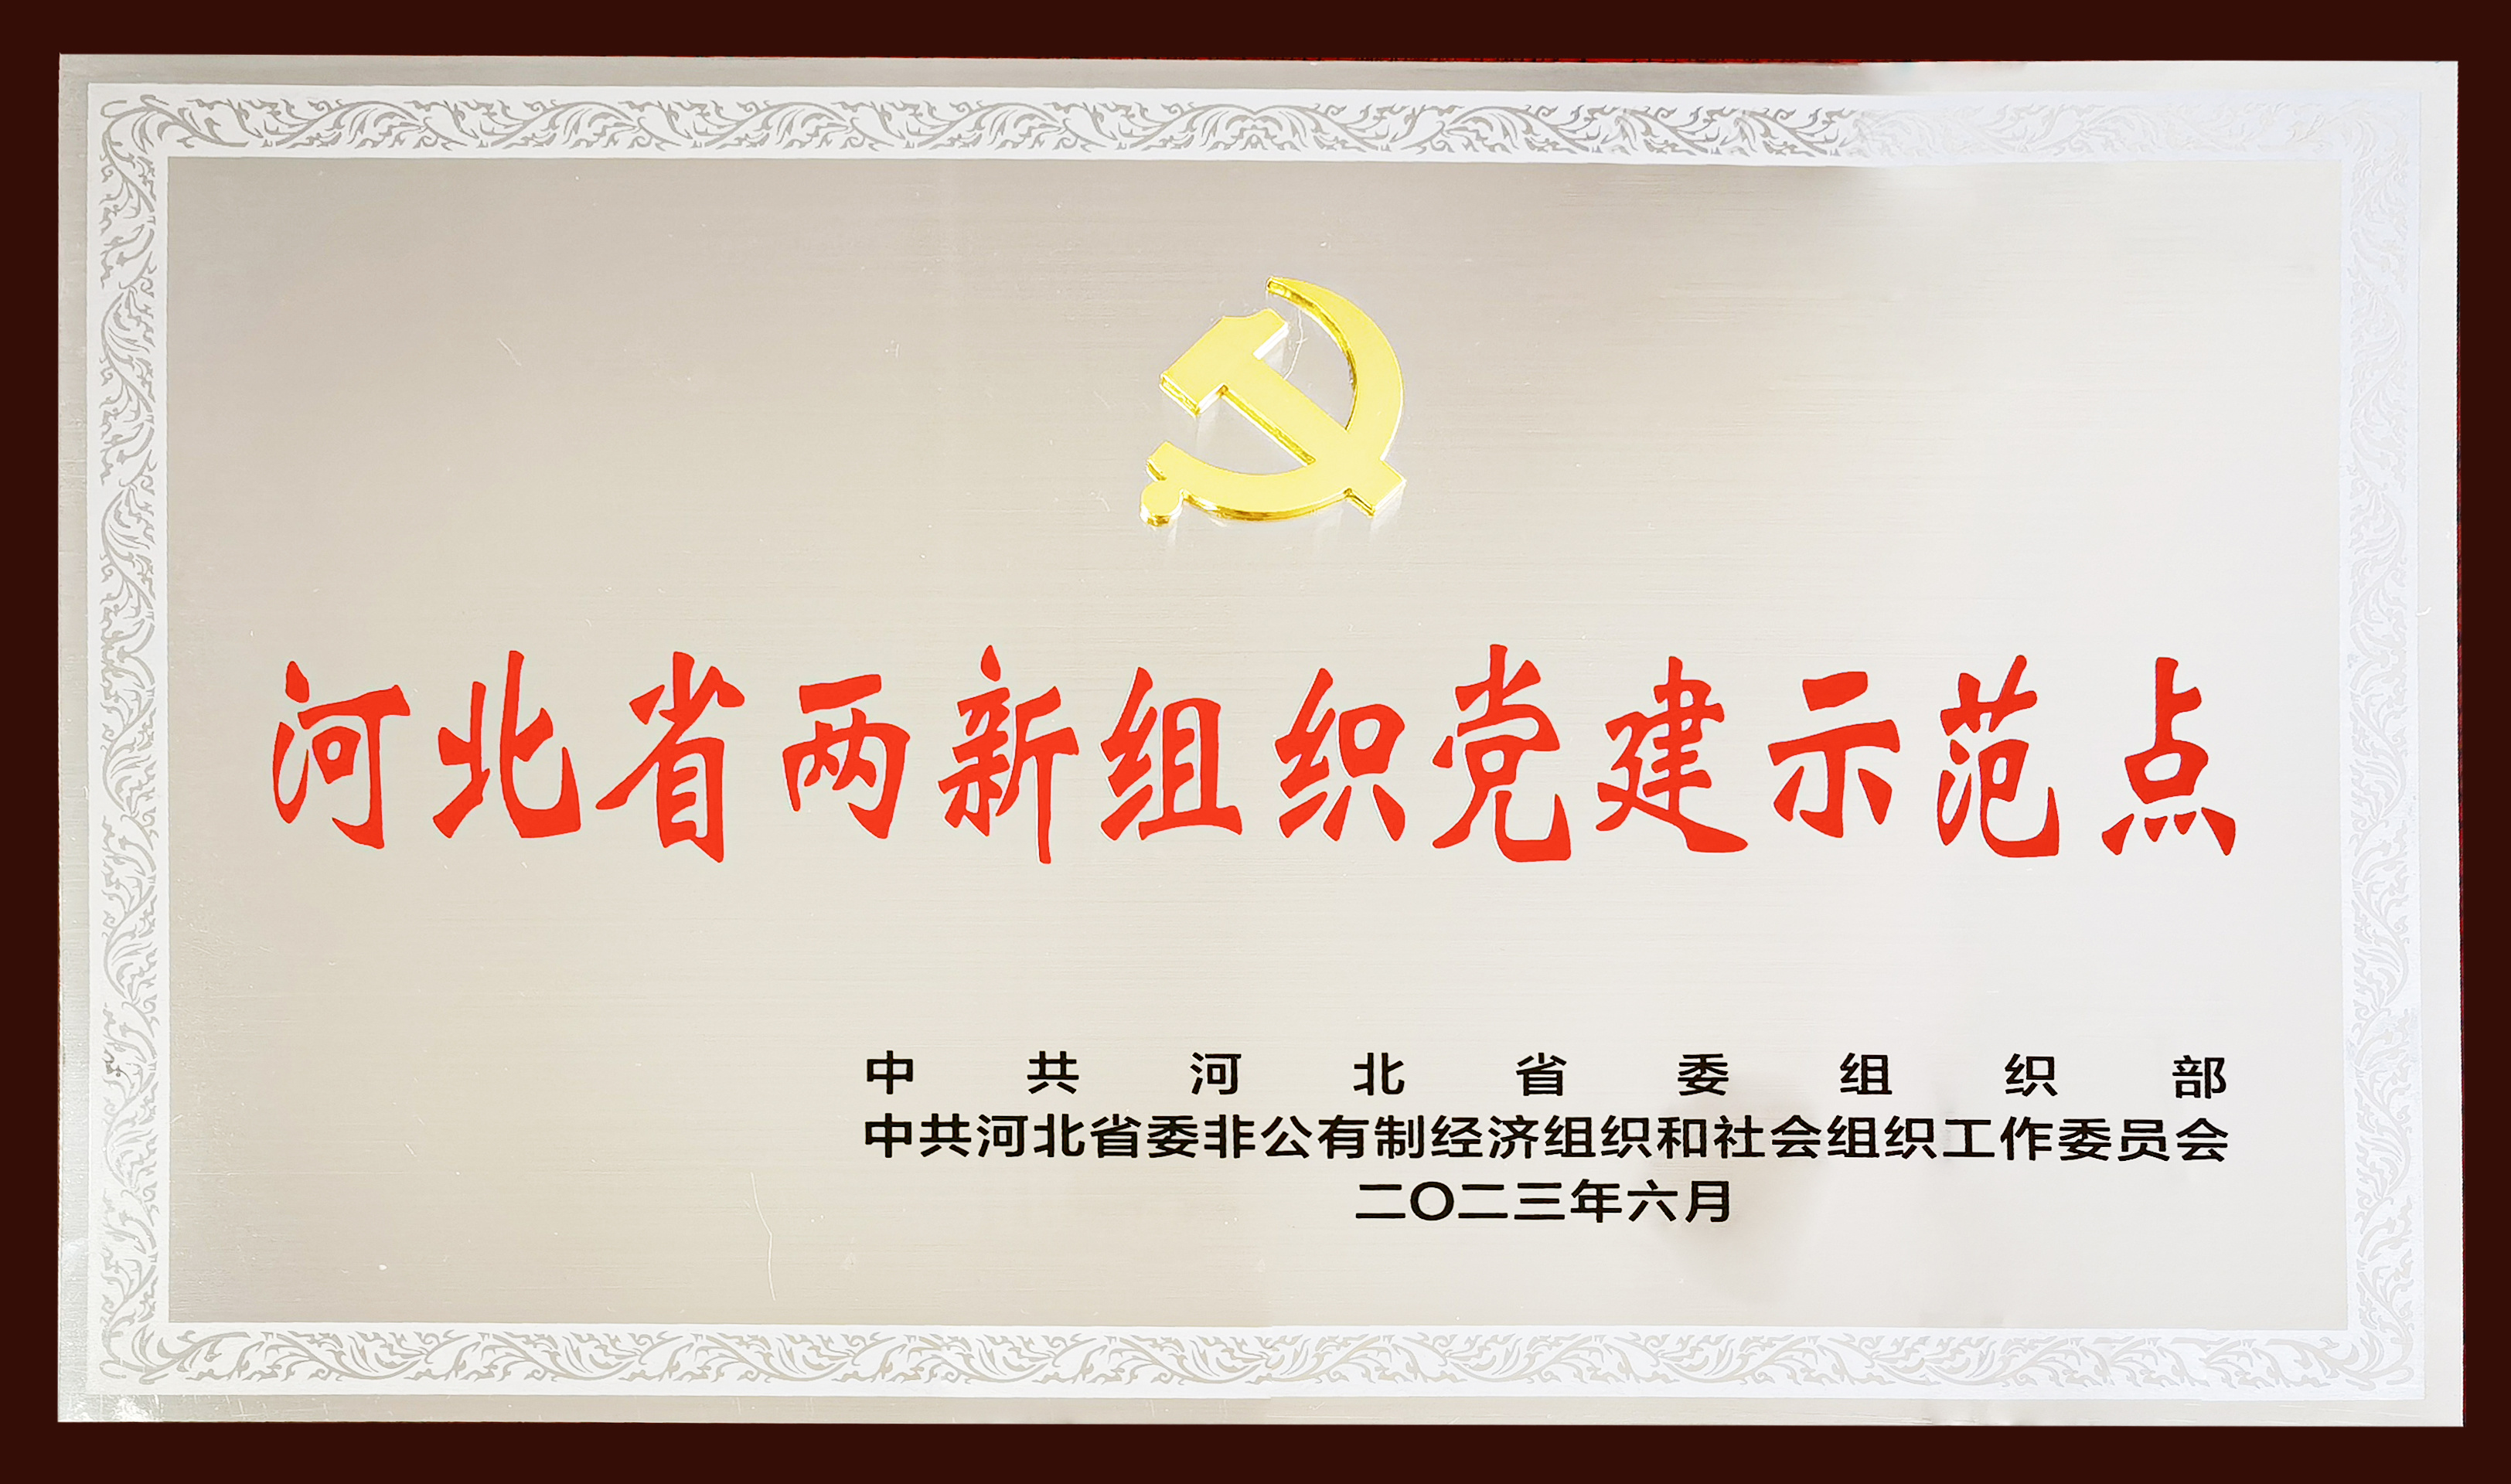 衡橡科技黨委榮膺 —— 河北省首批兩新組織黨建示範點